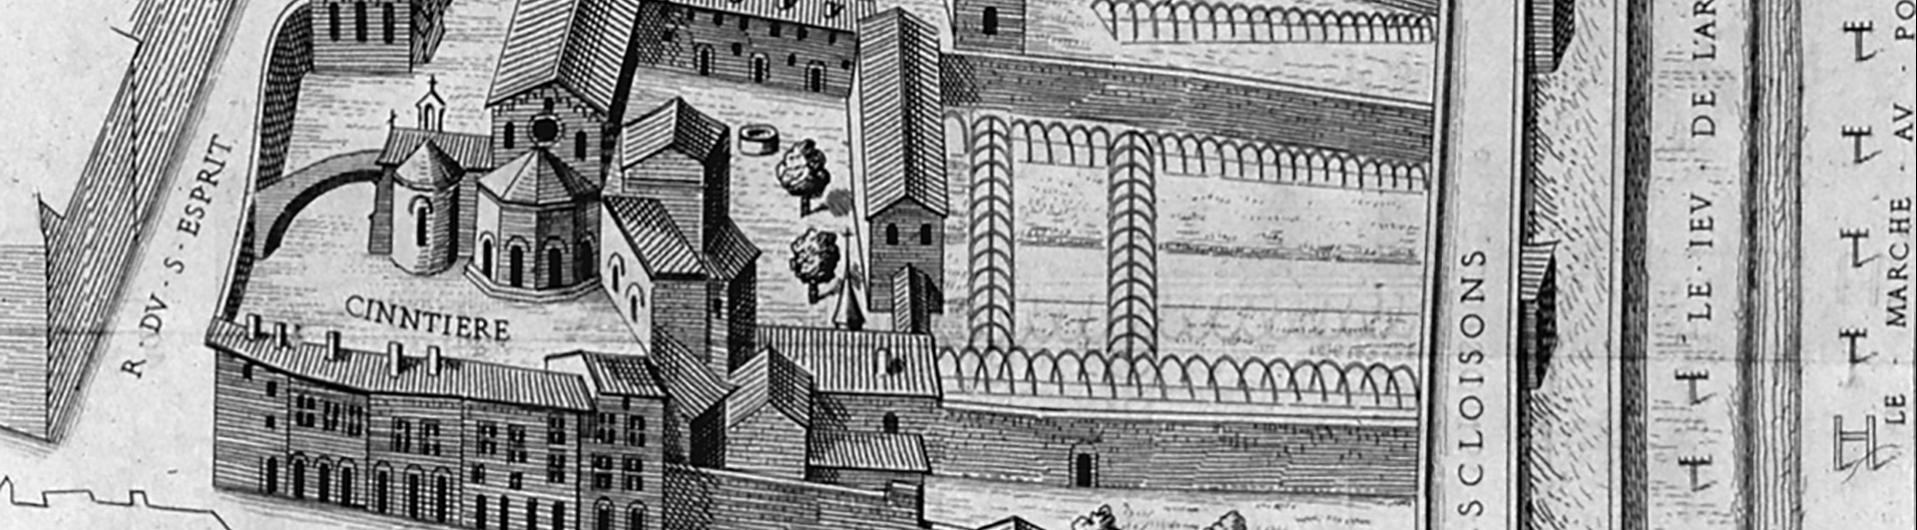 Plan scénographique de l'abbaye des dames de St pierre, sous le règne des rois François 1er et Henry 2 d'après le plan général de la Ville de Lyon, conservé aux Archives Municipales